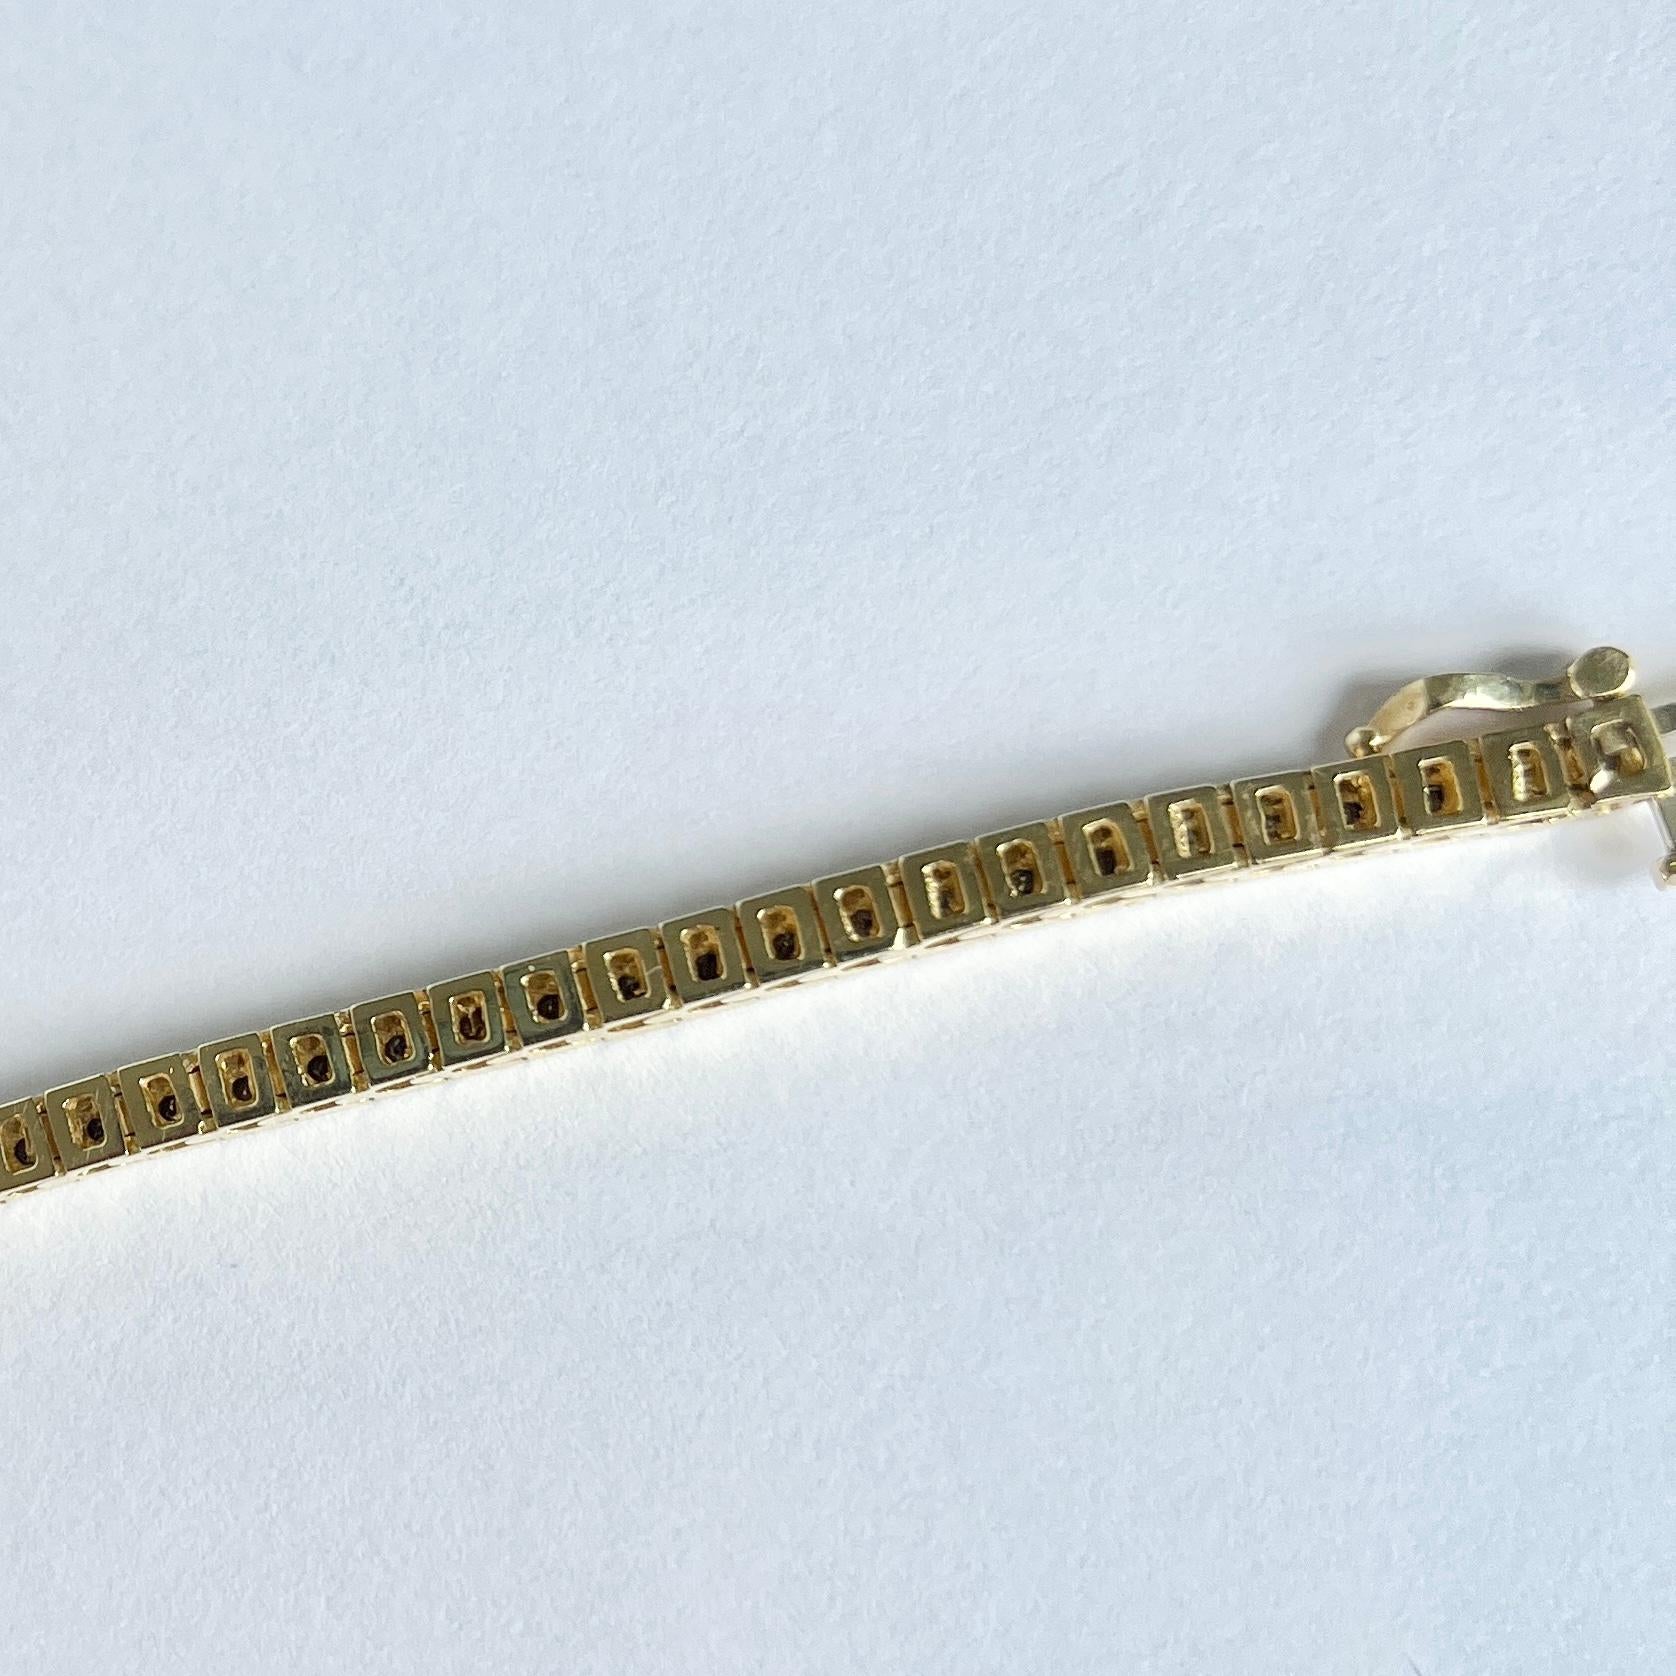 Dieses fabelhafte Armband besteht aus 63 Gliedern, von denen jedes einen kleinen, wunderschönen Diamanten von je 2 Pkt. enthält. Das Gesamtkaratgewicht der Diamanten in diesem Armband beträgt 1,26 pts. Das Armband ist aus 14-karätigem Gold